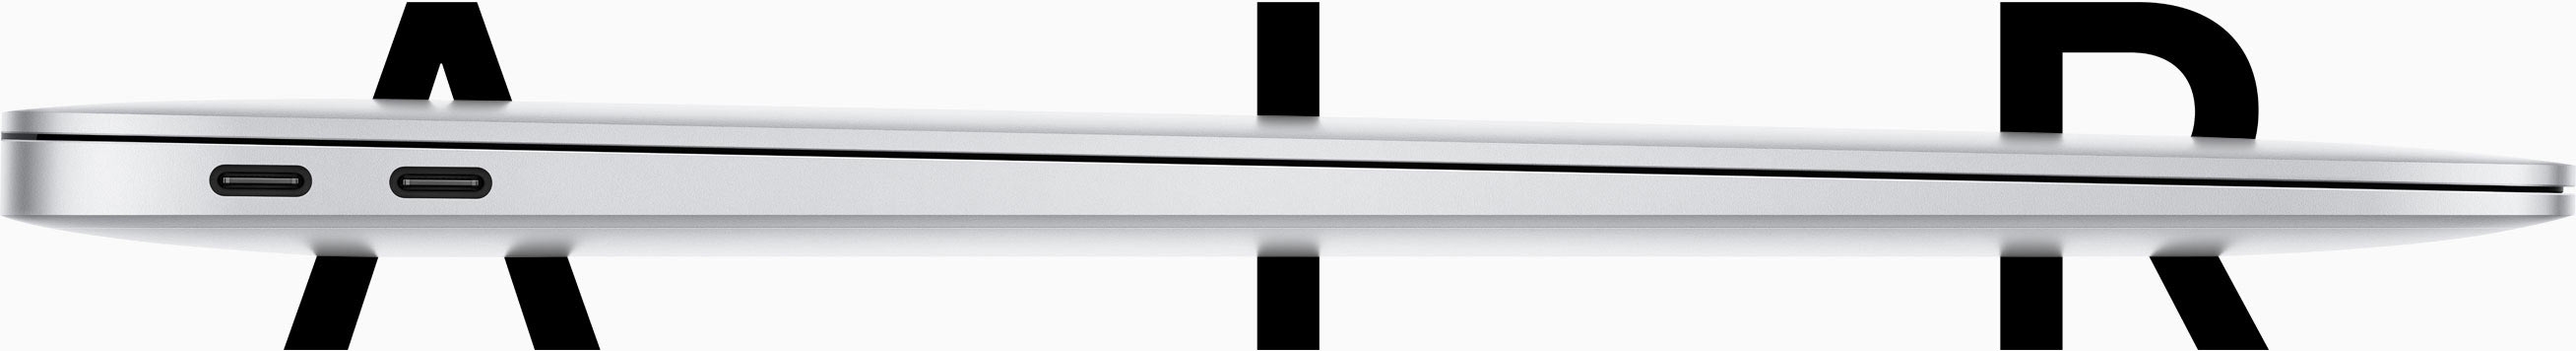 Apple уменьшила габариты MacBook Air и оснастила экраном Rеtina